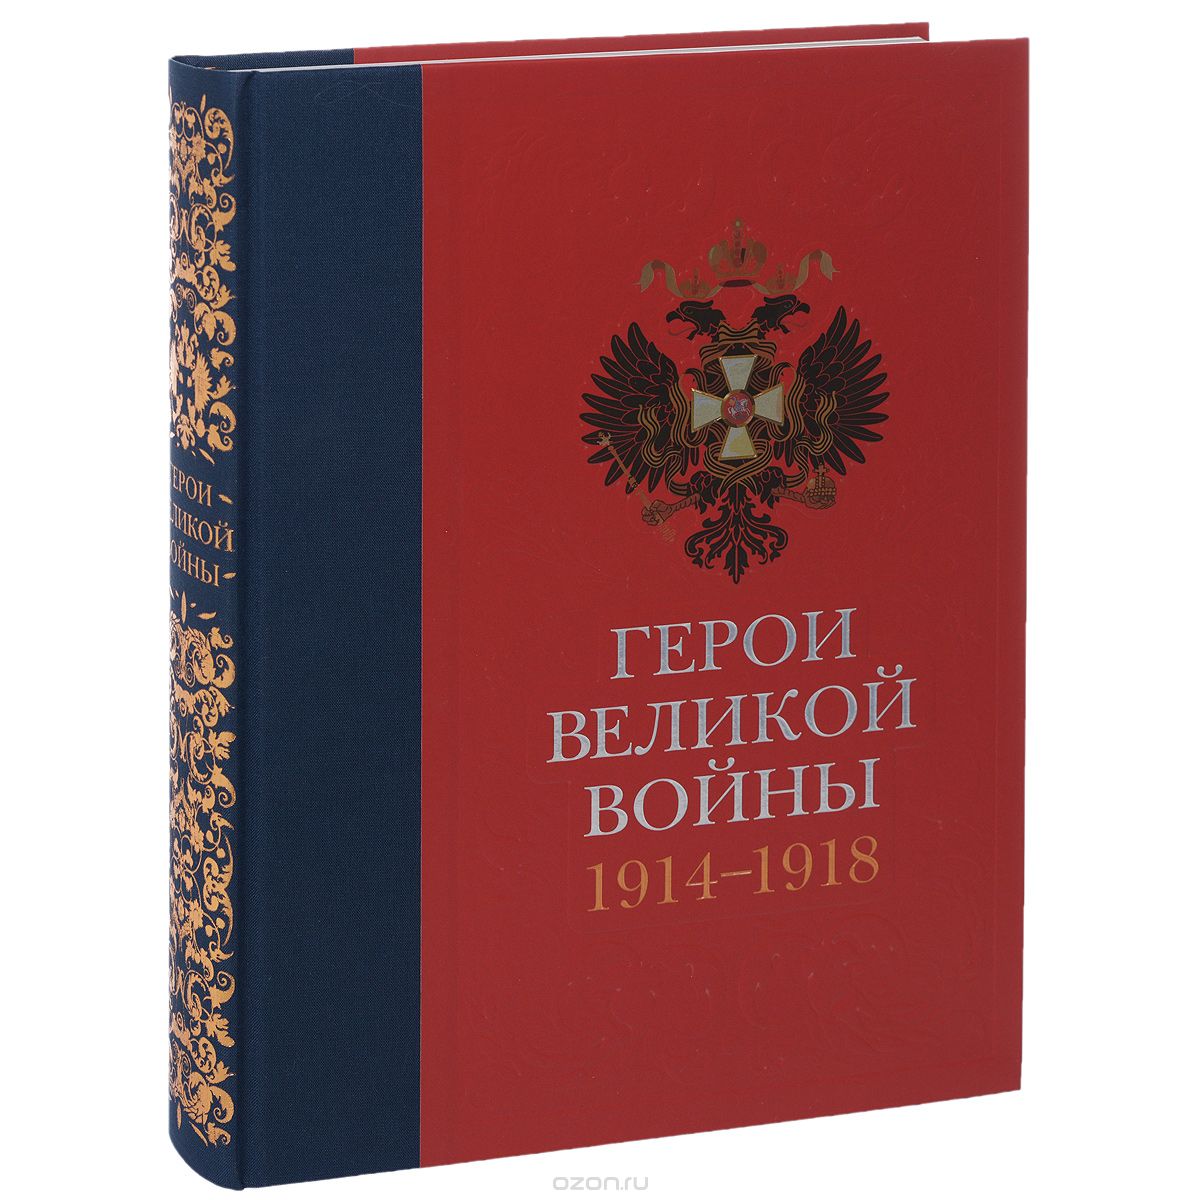 Скачать книгу "Герои Великой войны. 1914-1918, Т. Н. Ильина"